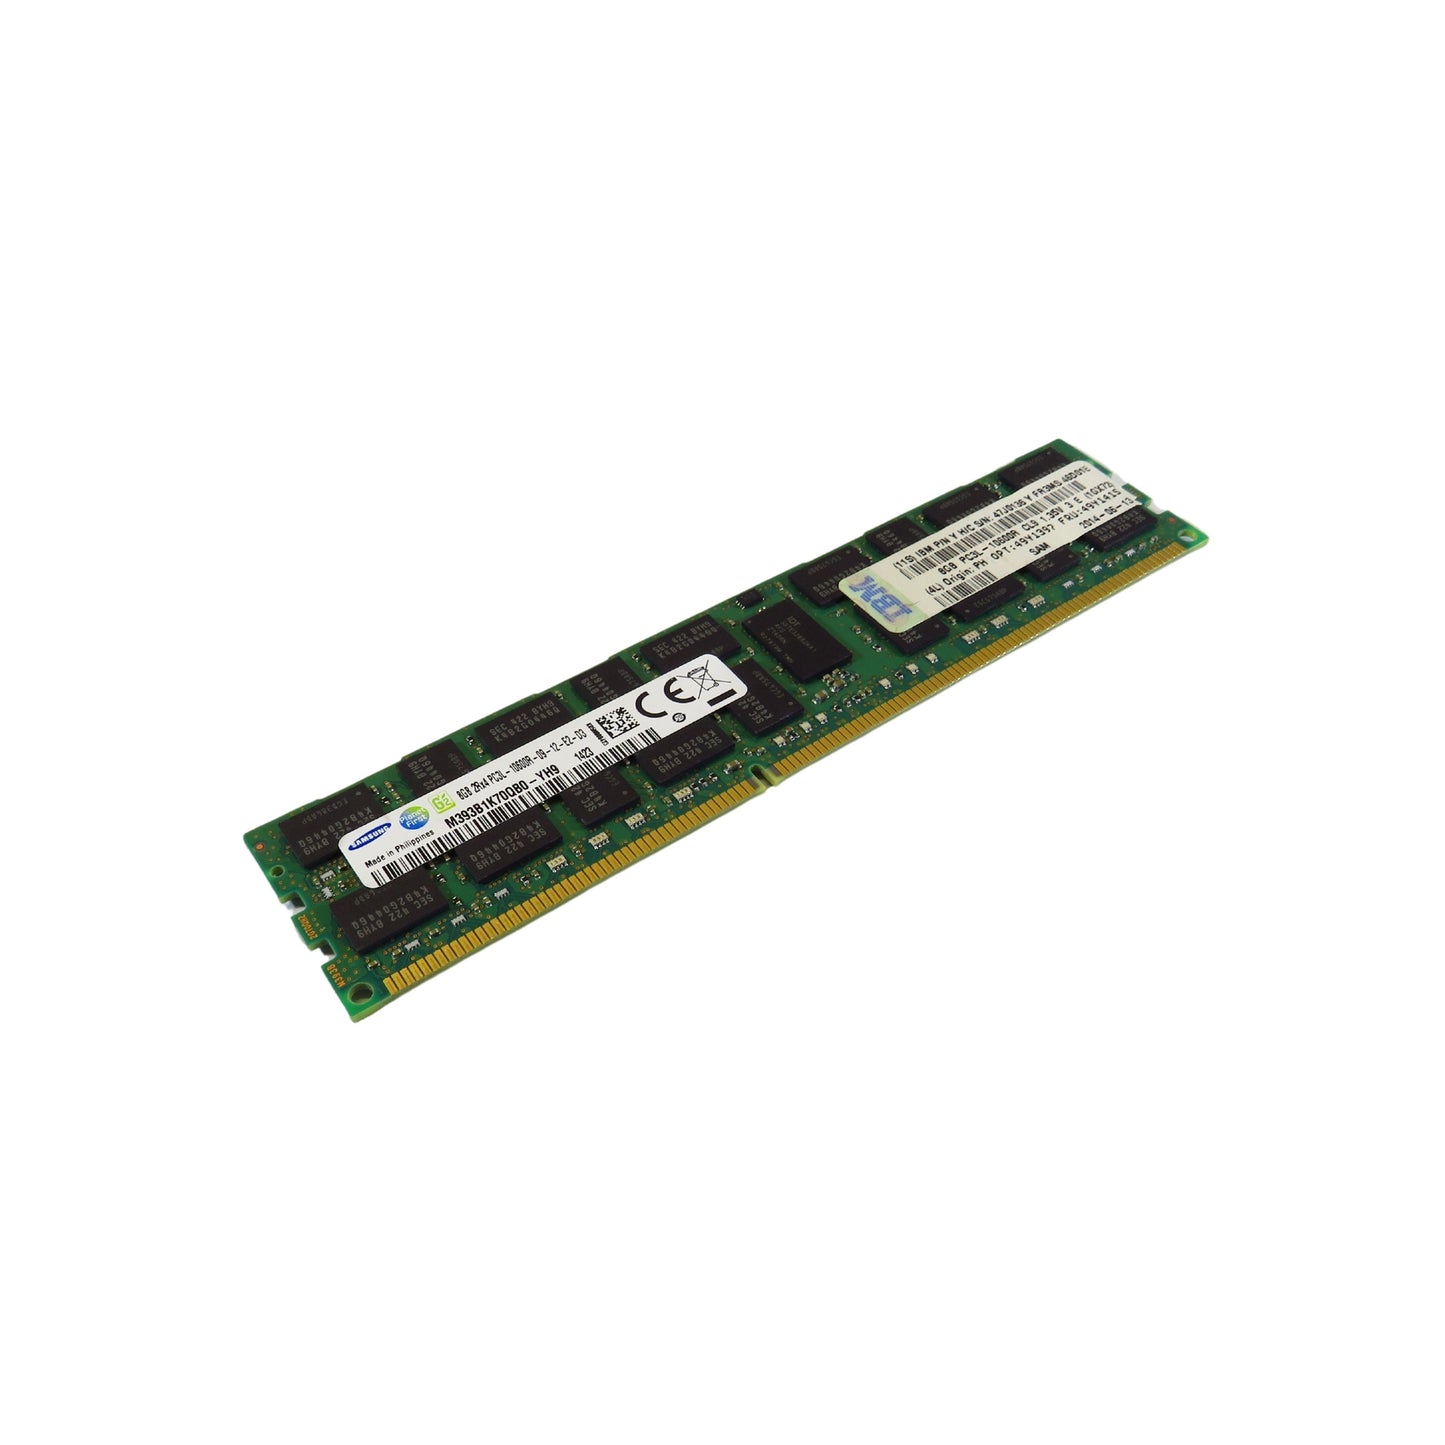 IBM 49Y1415 49Y1397 8GB 2Rx4 PC3L-10600 1333MHz DDR3 Server Memory (Refurbished)